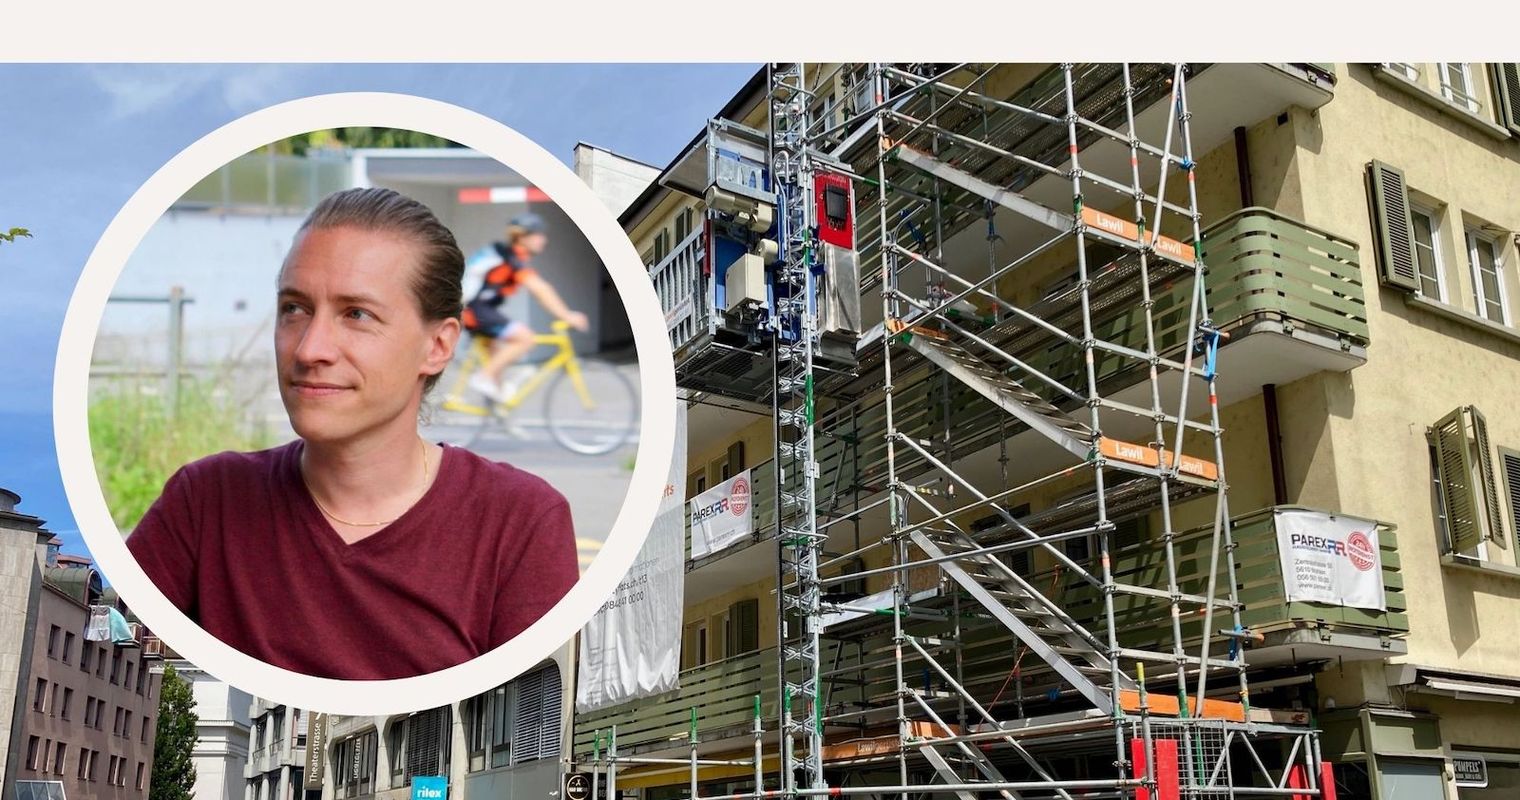 Touristen oder Wohnungen? Bauprojekt in Luzern heizt Debatte an